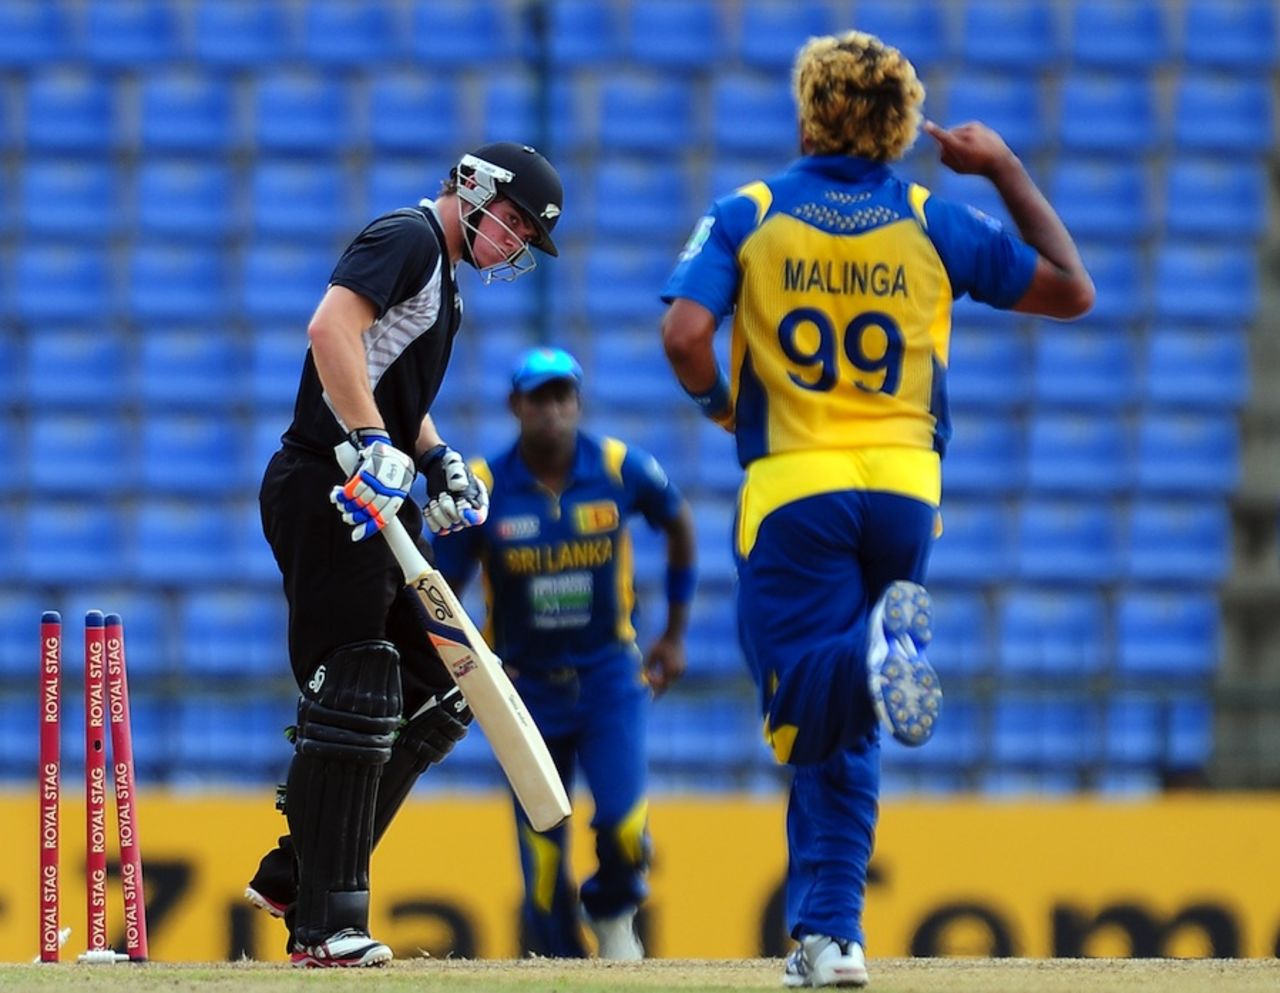 Tom Latham was bowled by Lasith Malinga for 2 off 18 balls, Sri Lanka v New Zealand, 2nd ODI, Pallekele, November 4, 2012